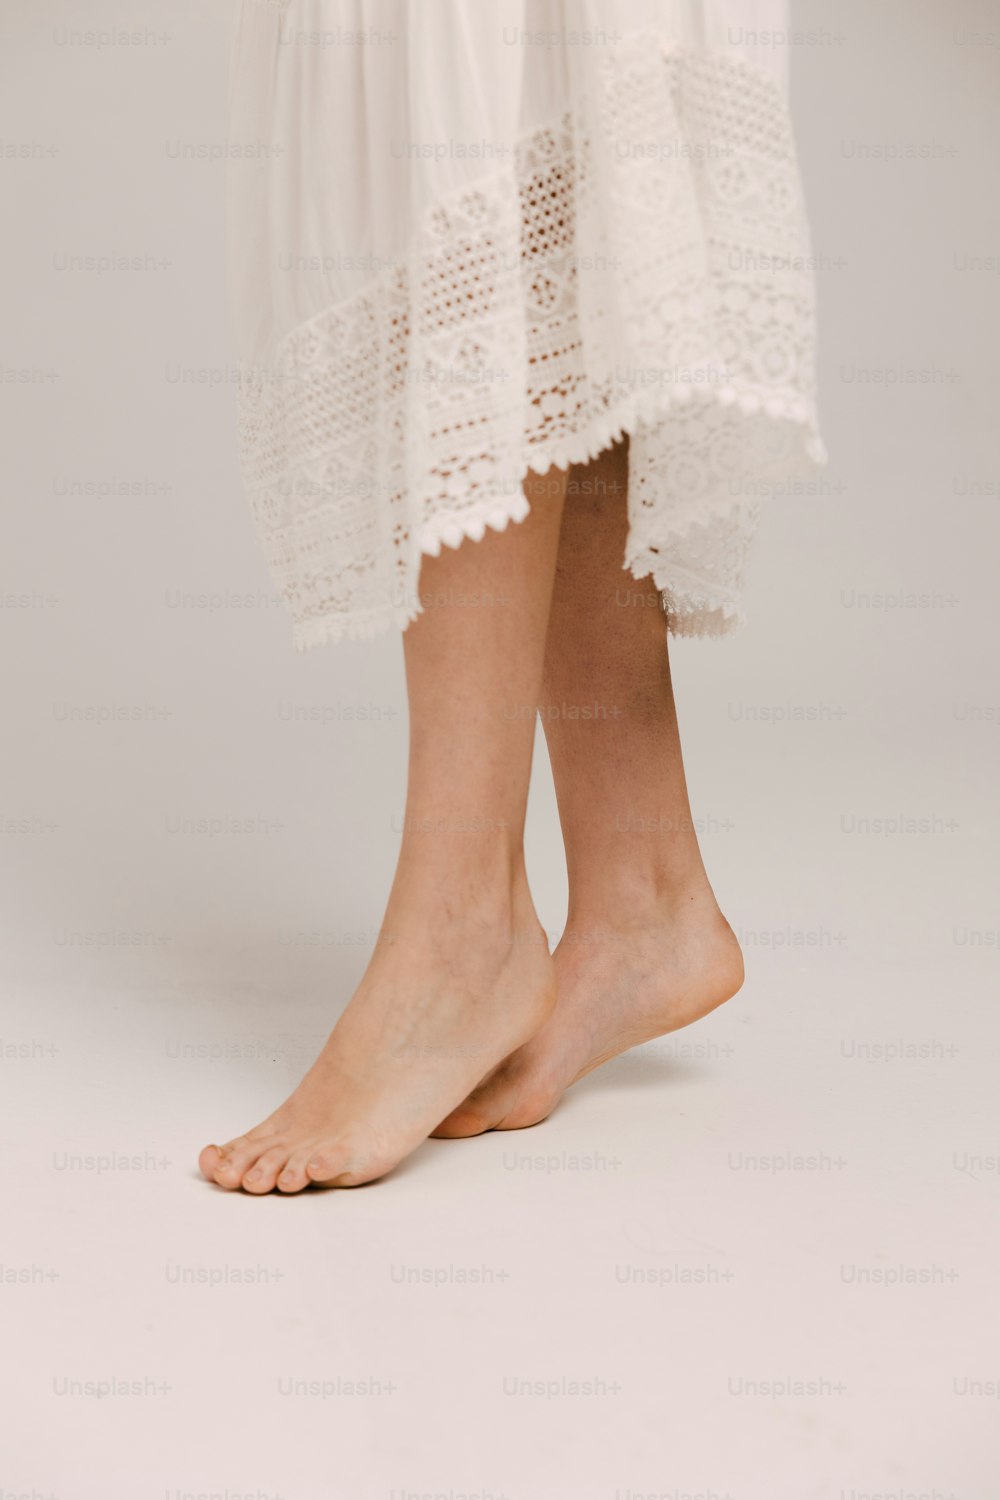 un primer plano de las piernas de una persona con un vestido blanco